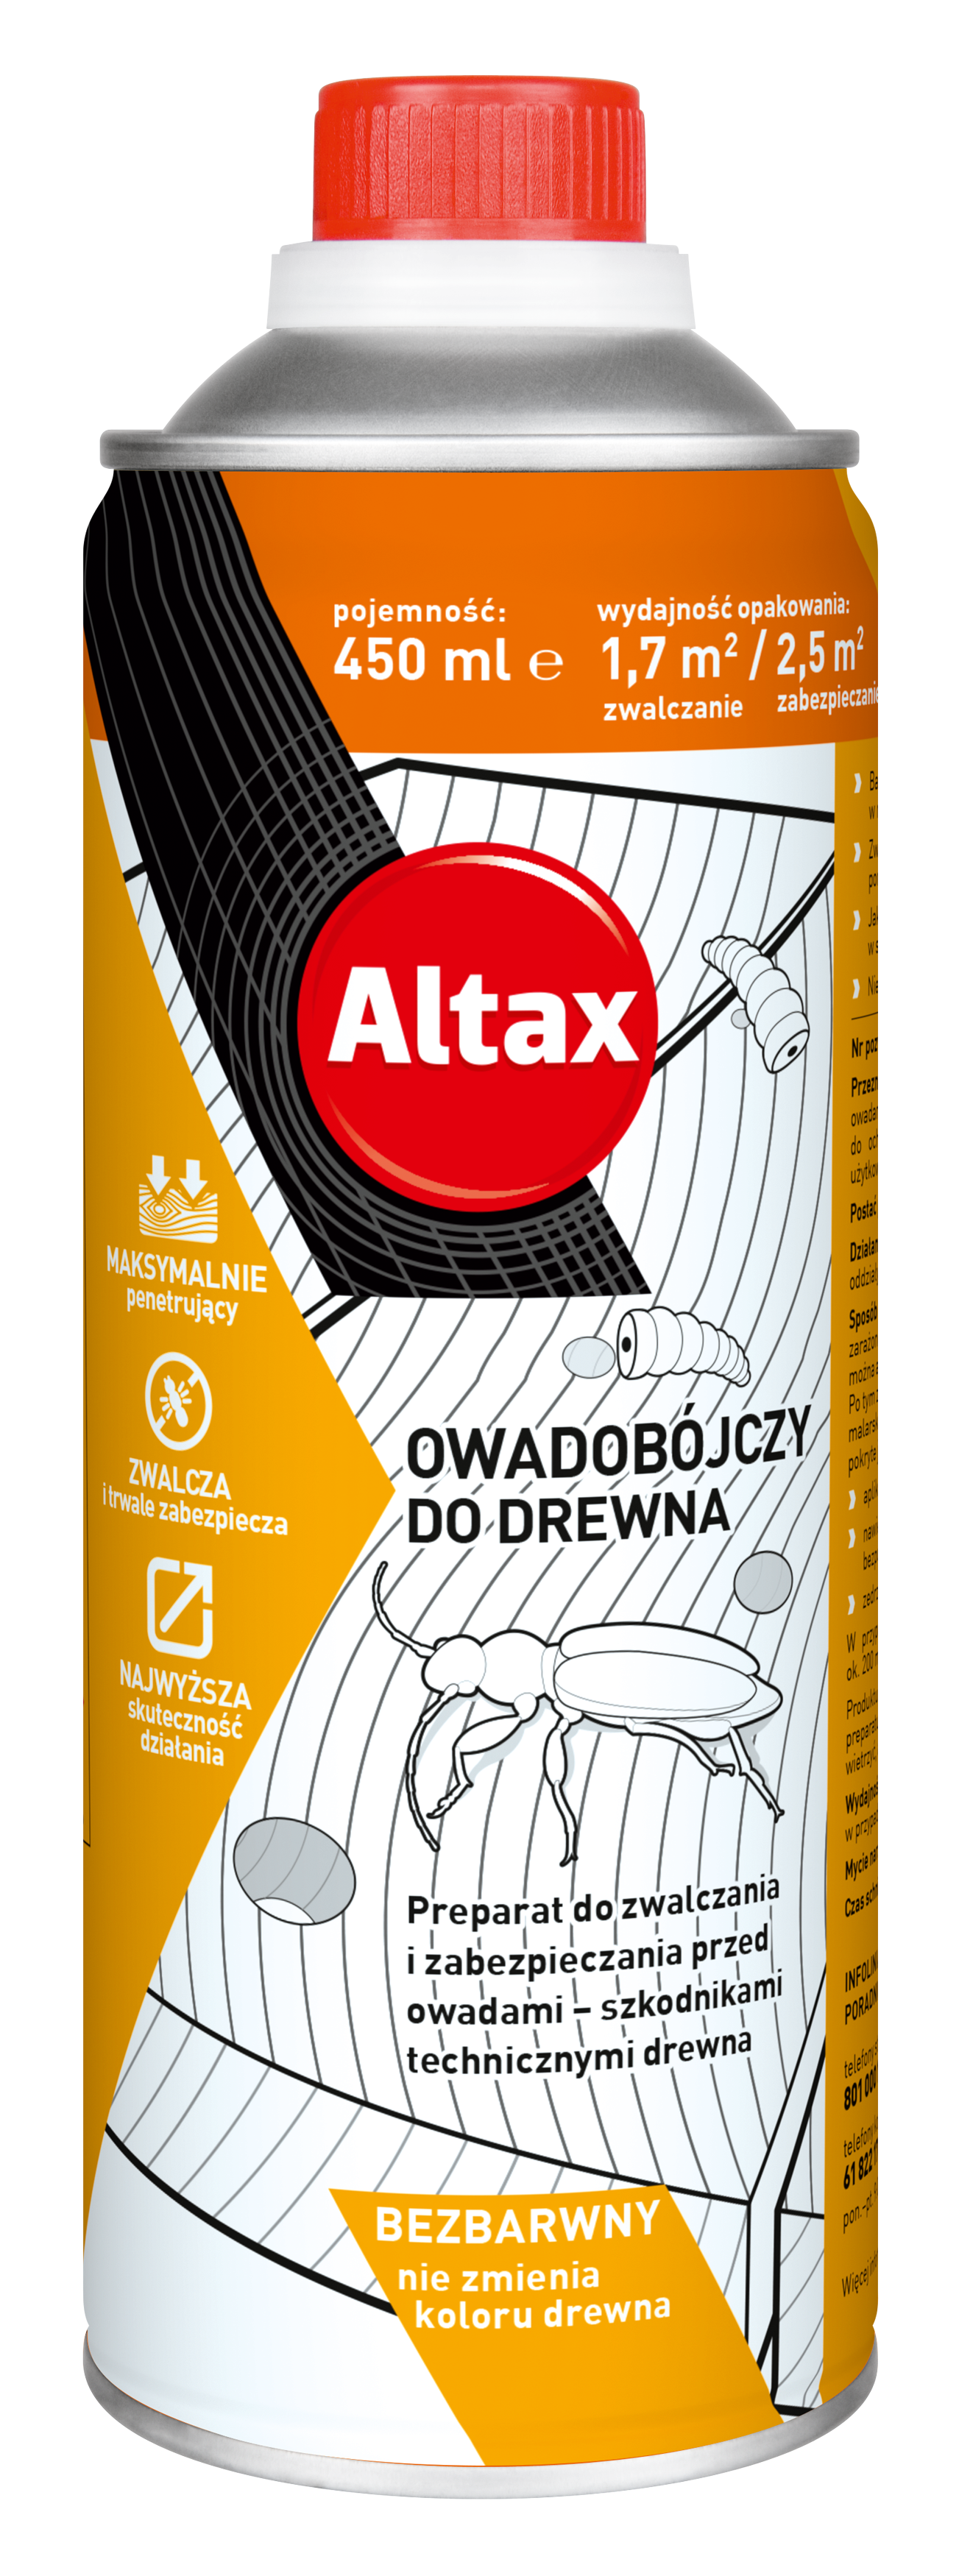 ALTAX-owadobojczy-do-drewna-450ml-01-wiz